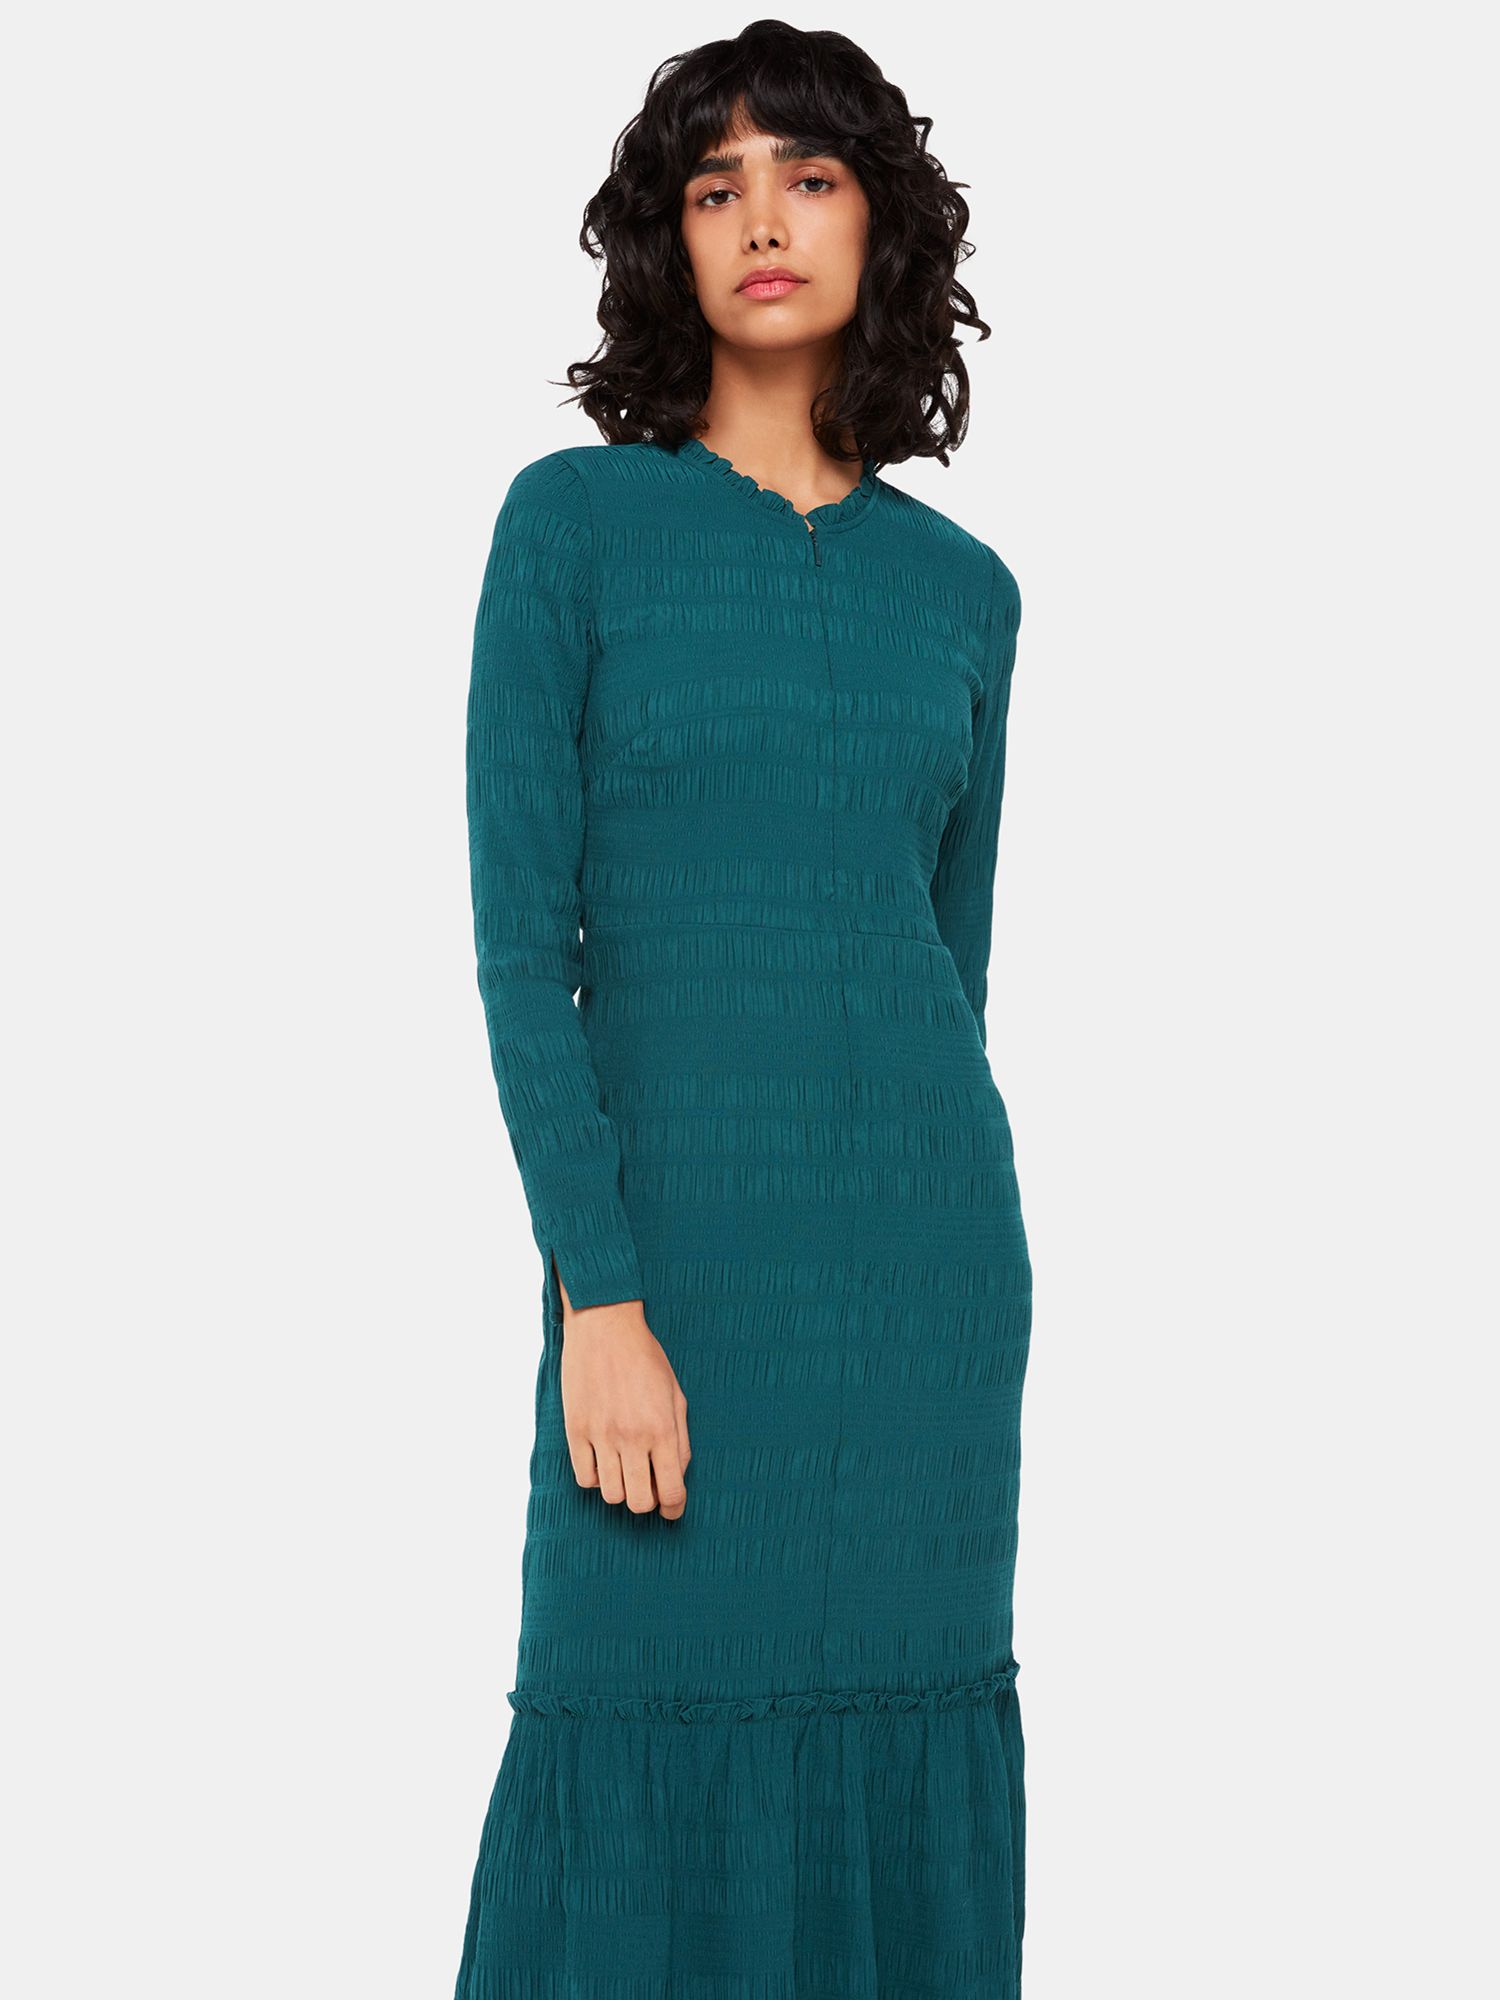 Whistles Mila Textured Midi Dress, Green, 14